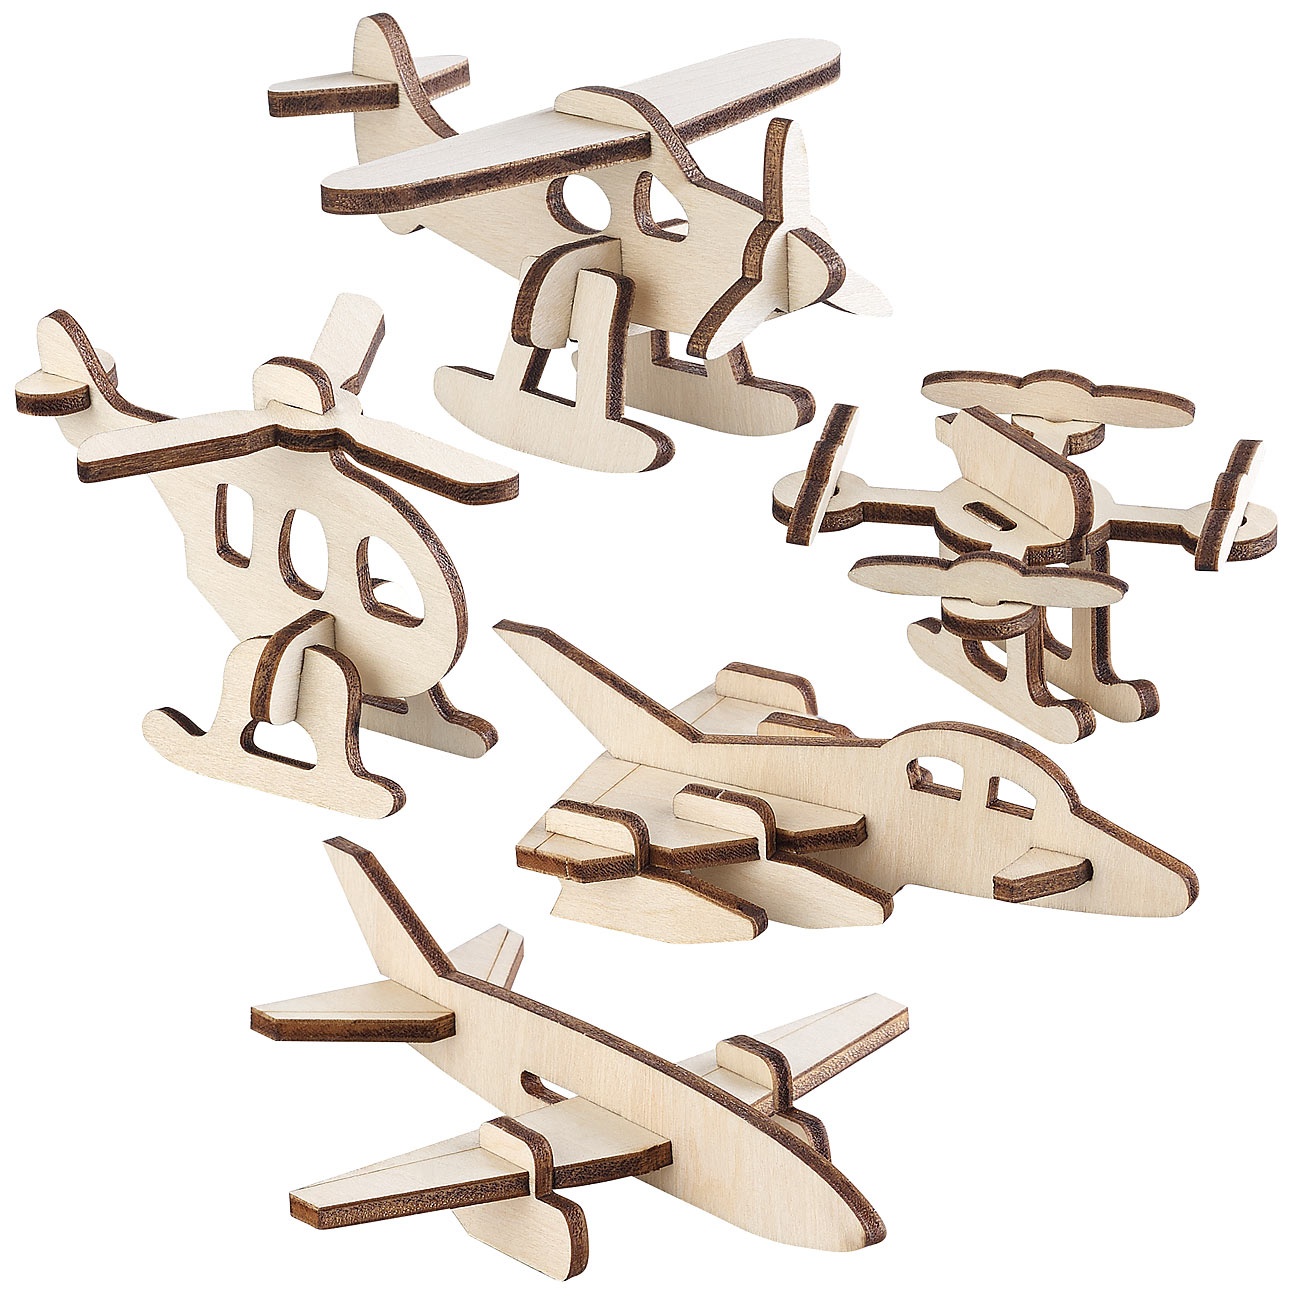 5er-Set 3D-Bausätze Mini-Flugmaschinen aus Holz, 33-teilig